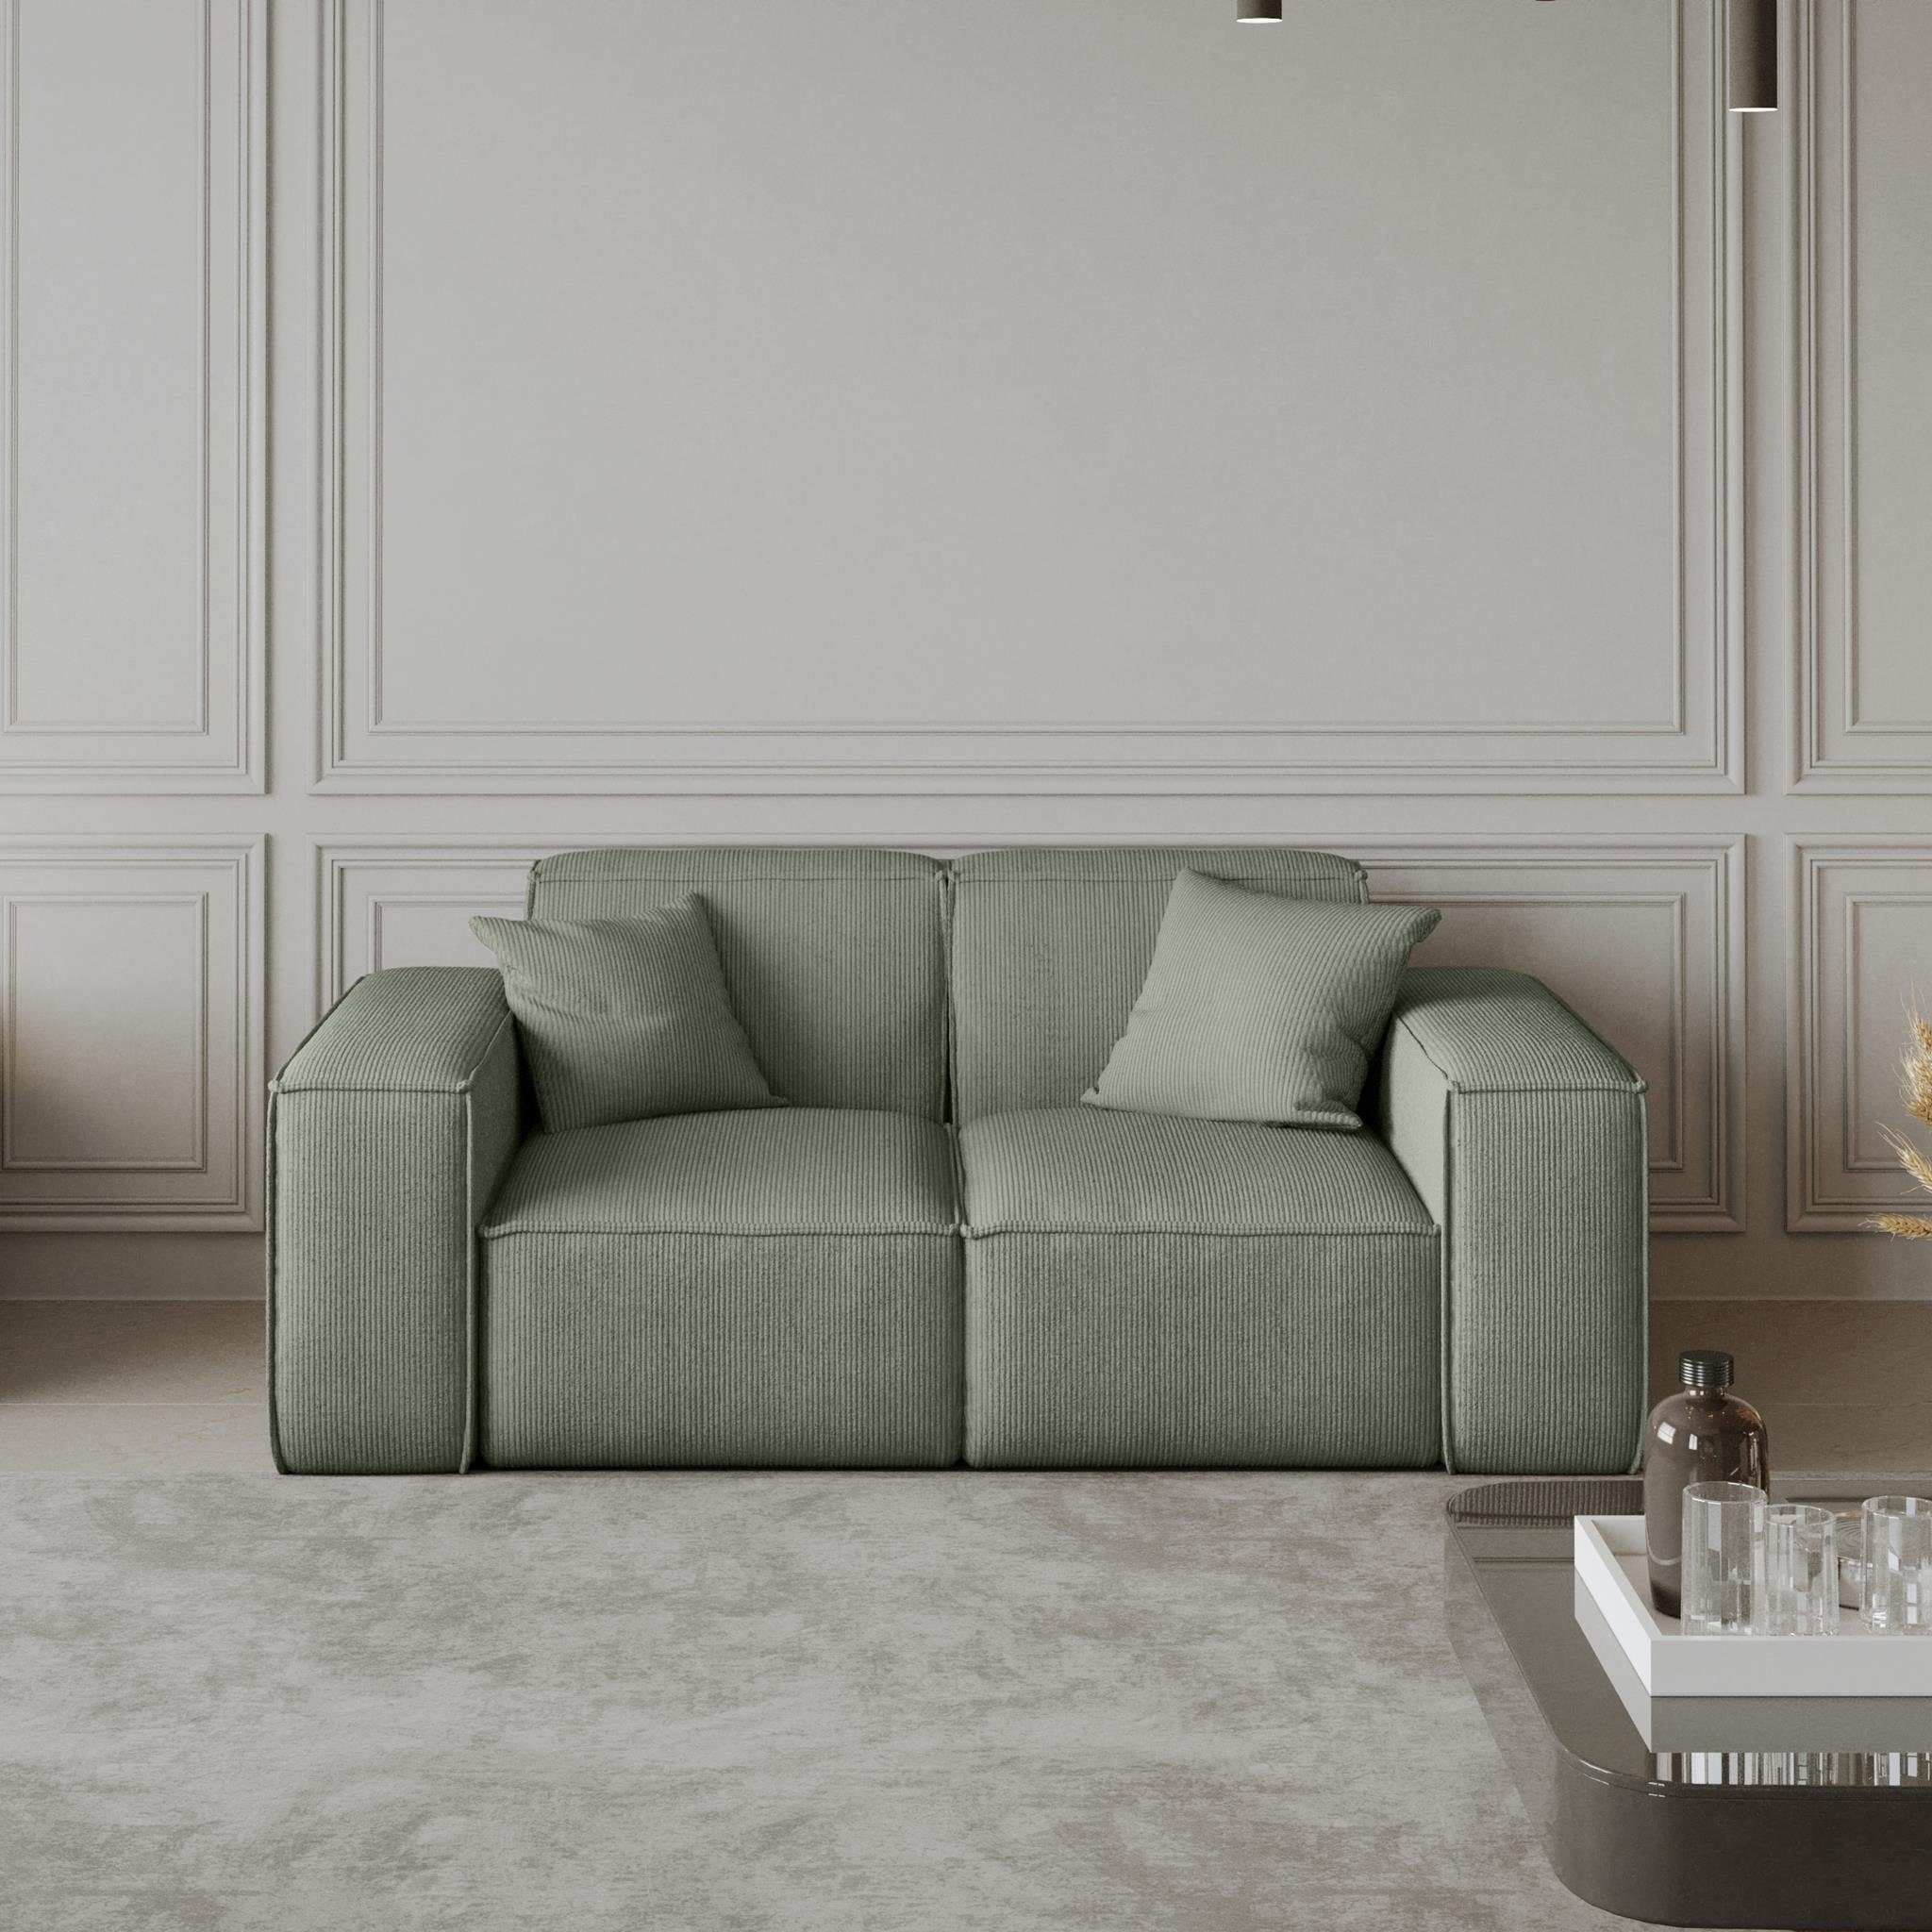 Beautysofa Sofa Lugano, 2-Sitzer Sofa Stil, modernes inlusive Breite Armlehnen Zweisitzer Velourstoff, aus mit Wellenfedern, Cordstoff oder im